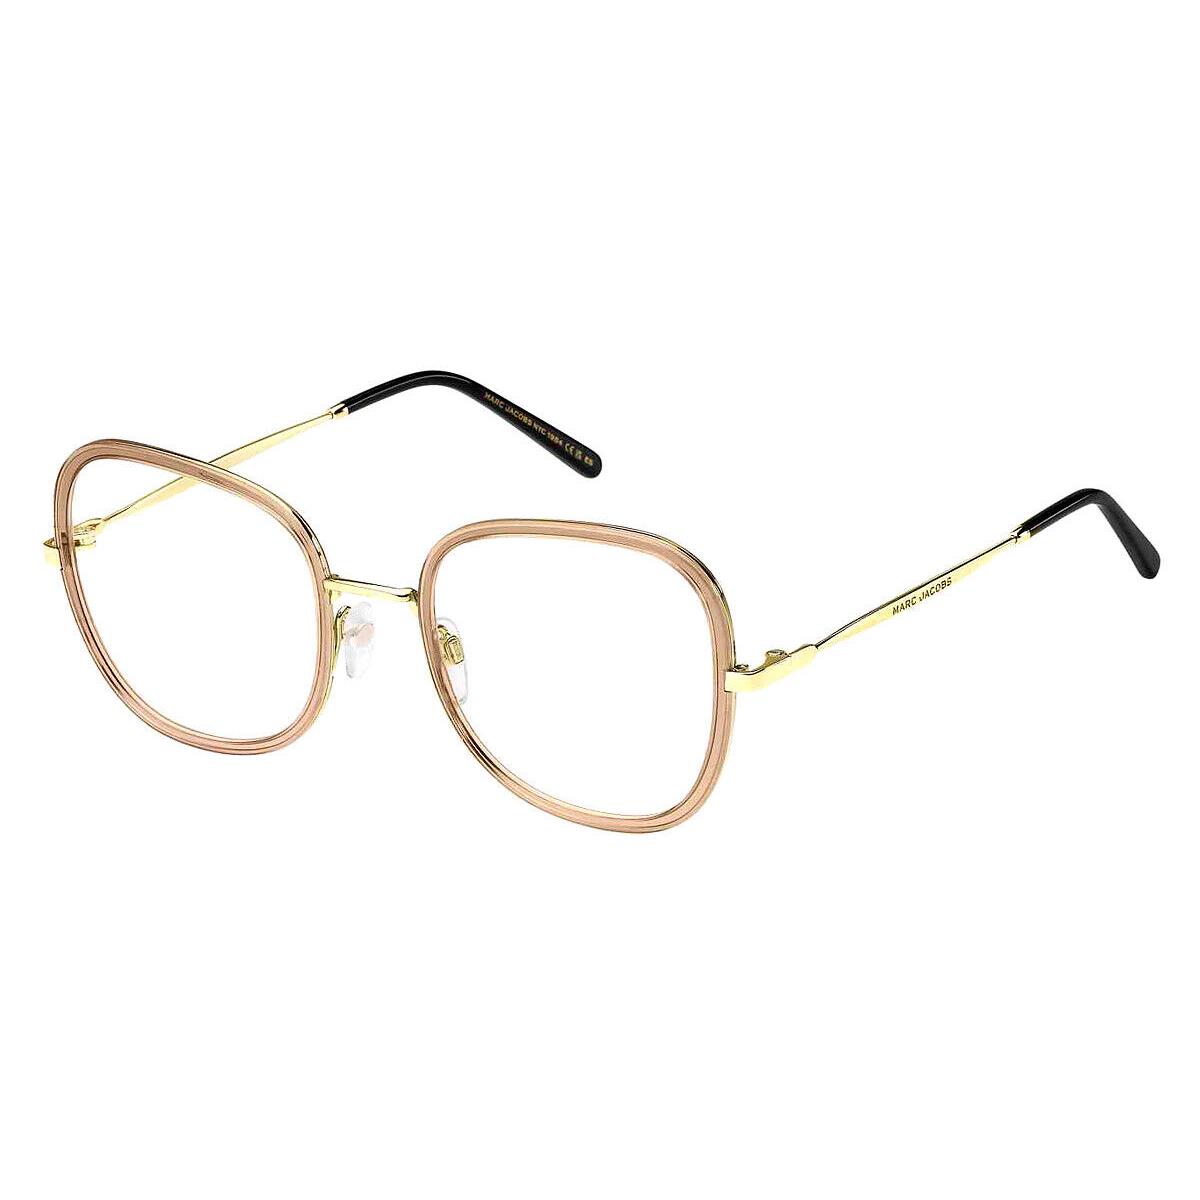 Marc Jacobs Mjb Eyeglasses Women Beige Gold 084A 53mm - Frame: Beige Gold 084A, Lens: Demo